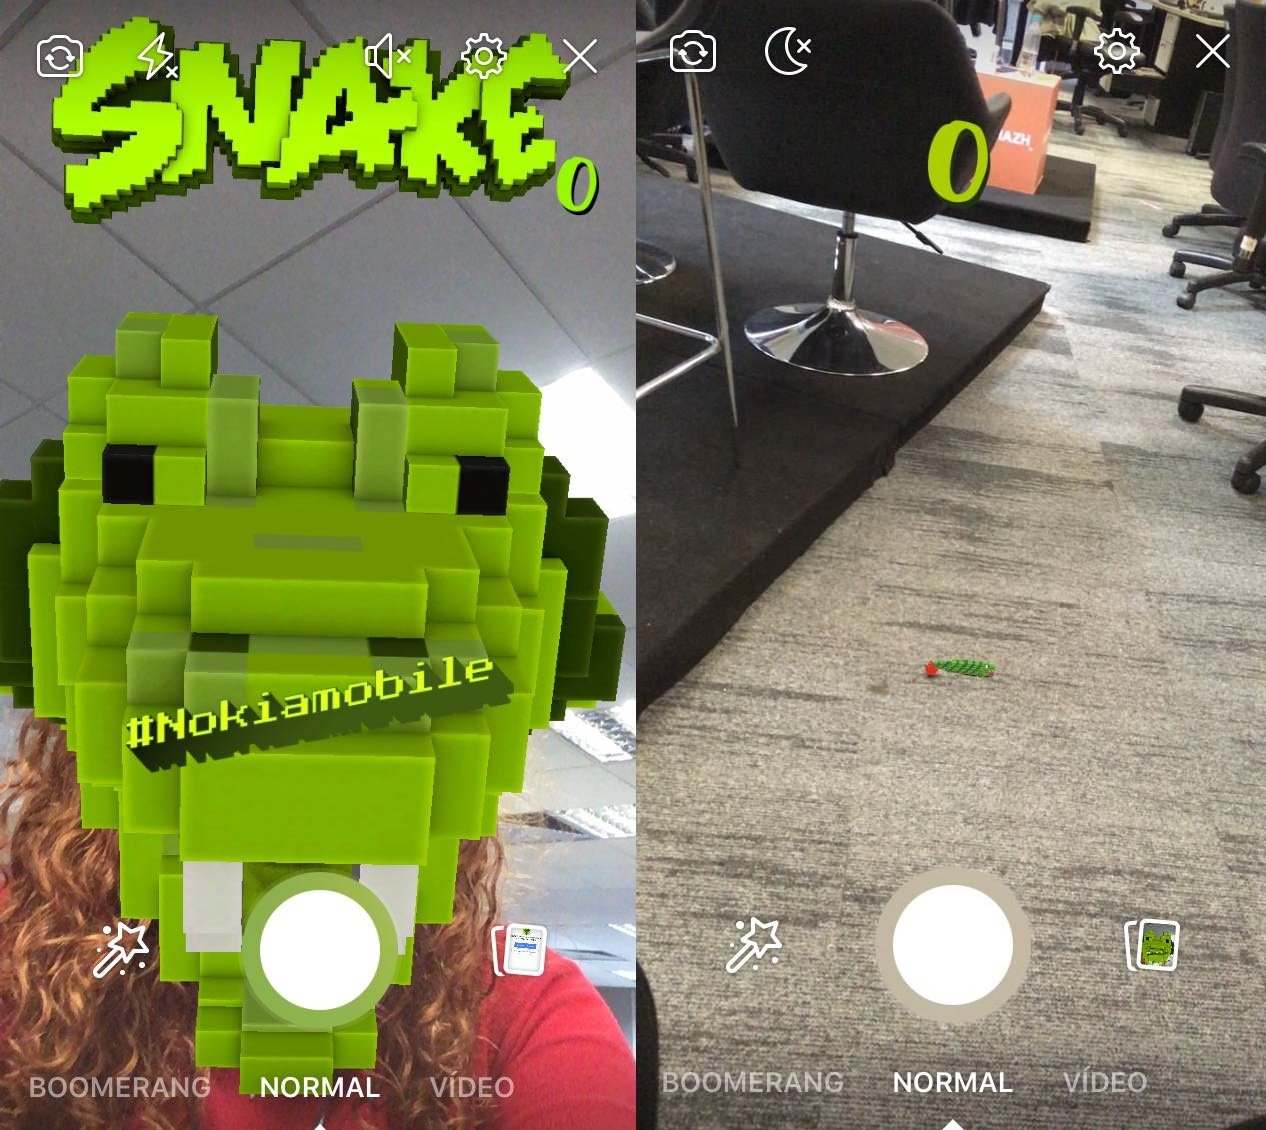 Saudade do 'jogo da cobrinha'? Nokia lança Snake para Facebook